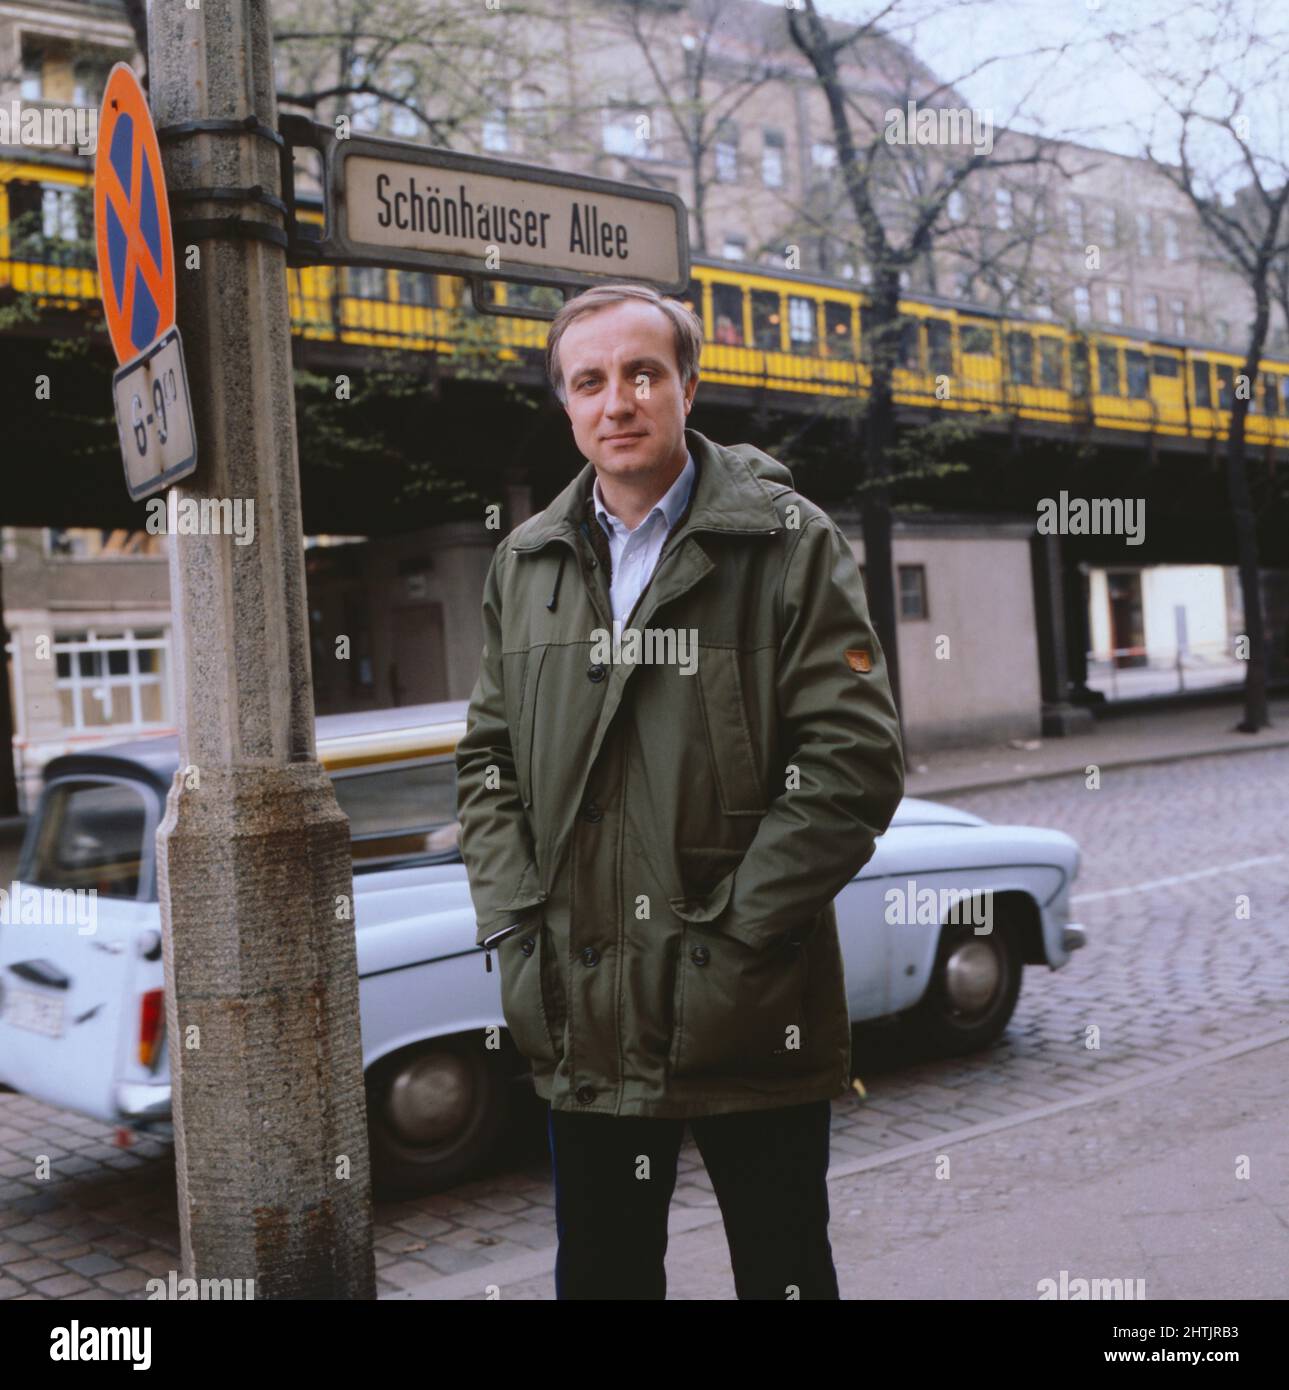 Fritz Pleitgen, giornalista deutscher, ARD Korrespondent a Ost-Berlino, gerente nel 1981. Fritz Pleitten, giornalista tedesco, corrispondente TV ARD a Berlino Est, qui nel 1981. Foto Stock